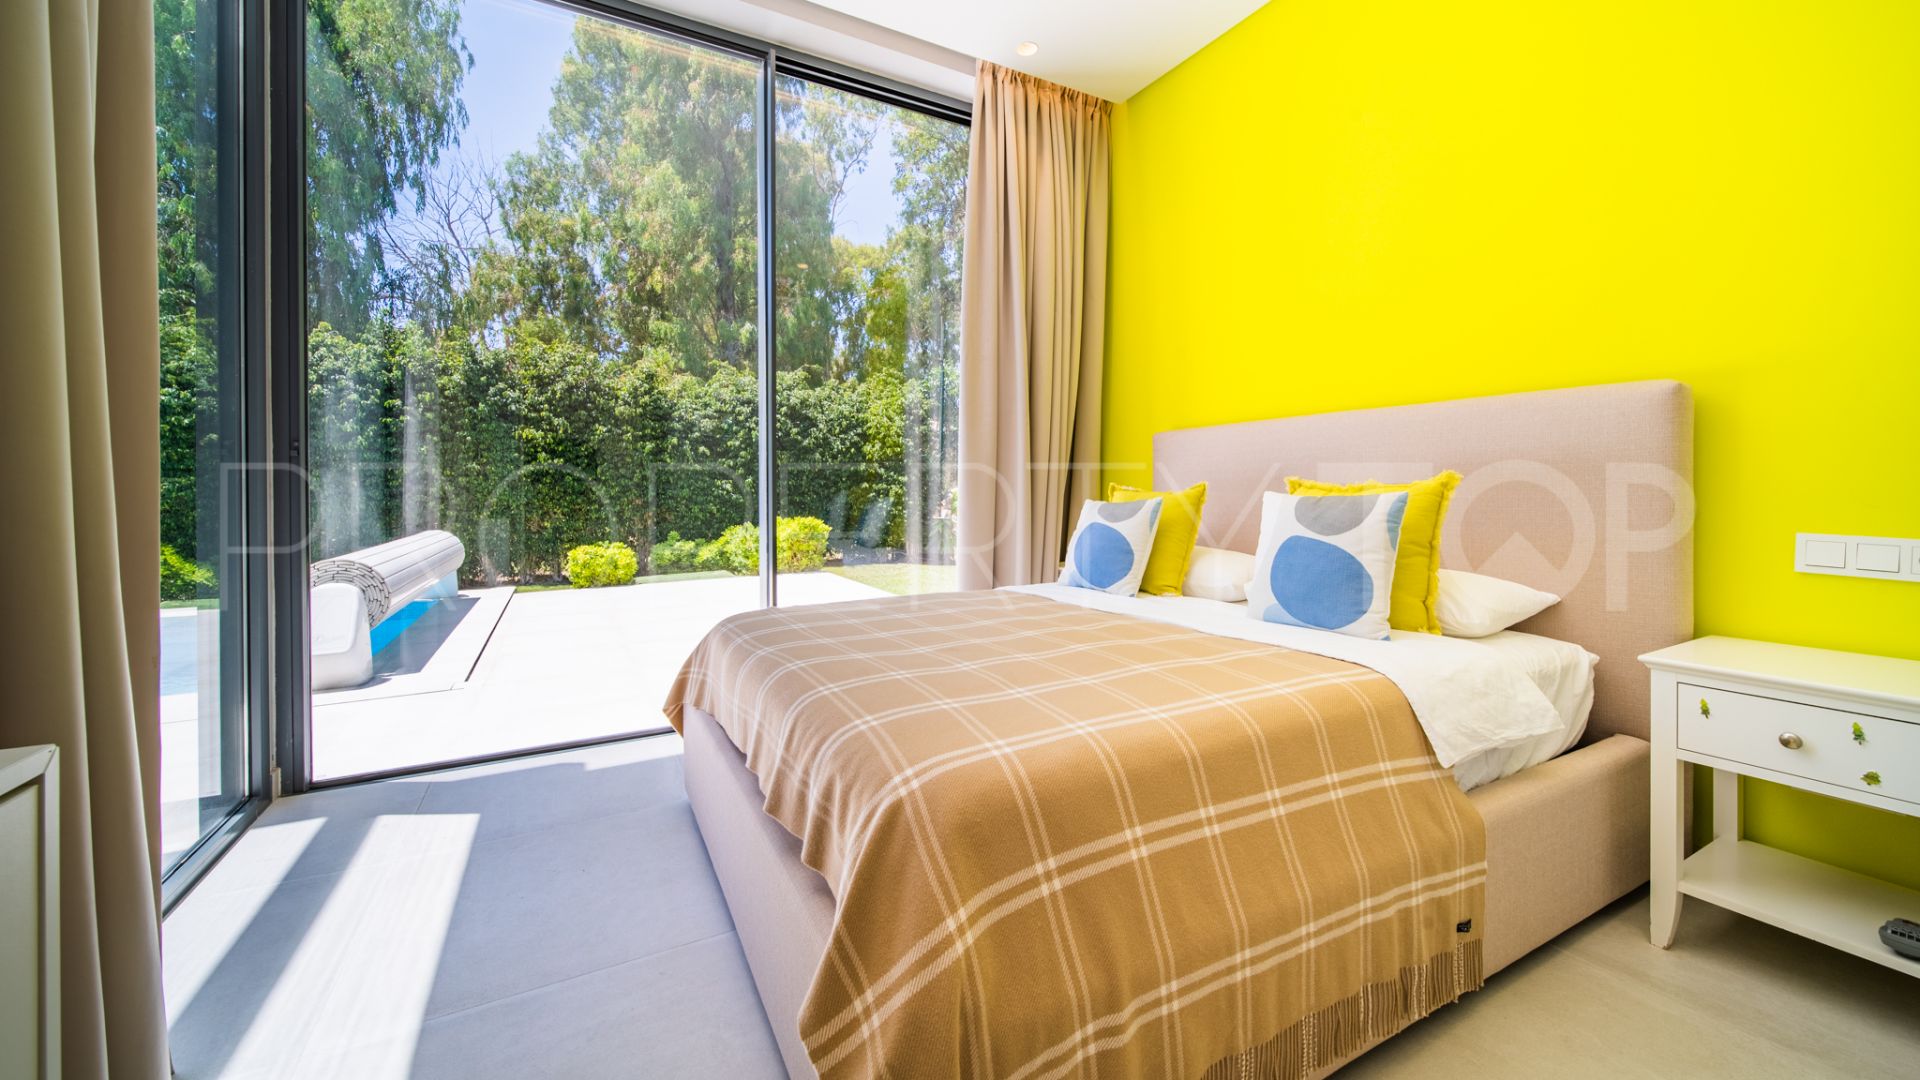 Buy villa in Arboleda with 4 bedrooms